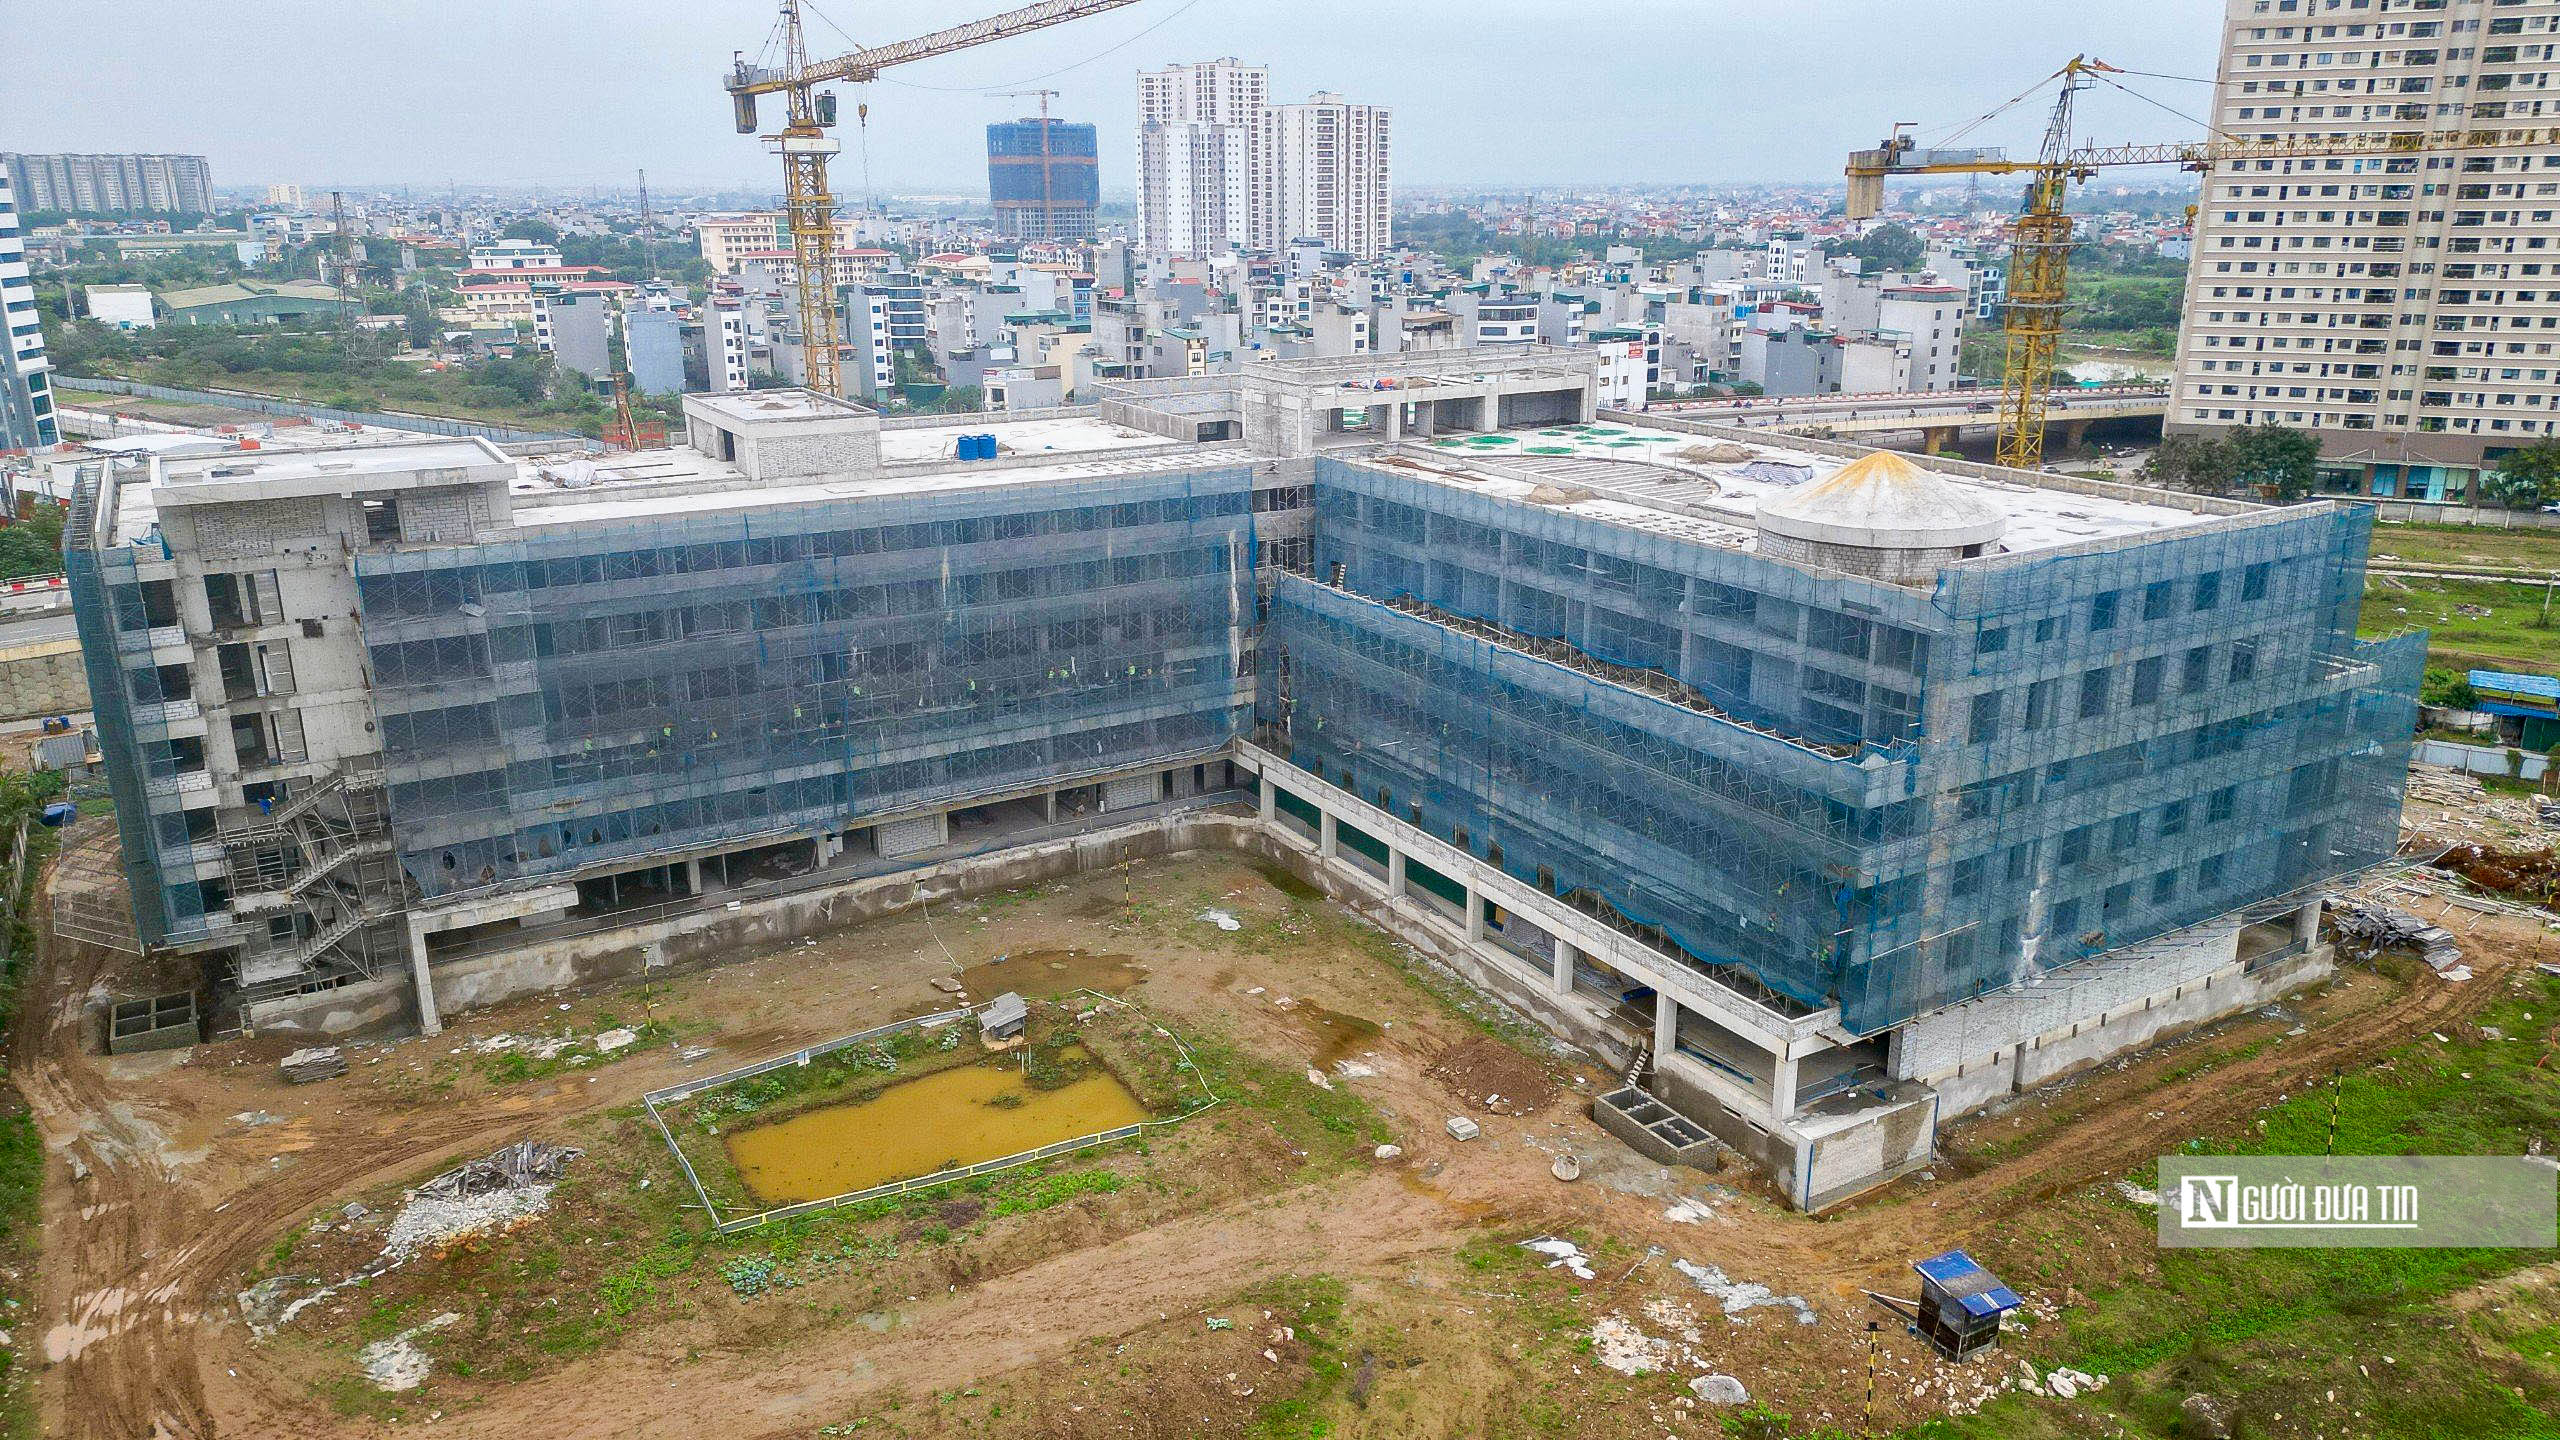 Bất động sản - Toàn cảnh Bệnh viện Nhi Hà Nội gần 800 tỷ đồng sau gần 1 năm thi công (Hình 3).